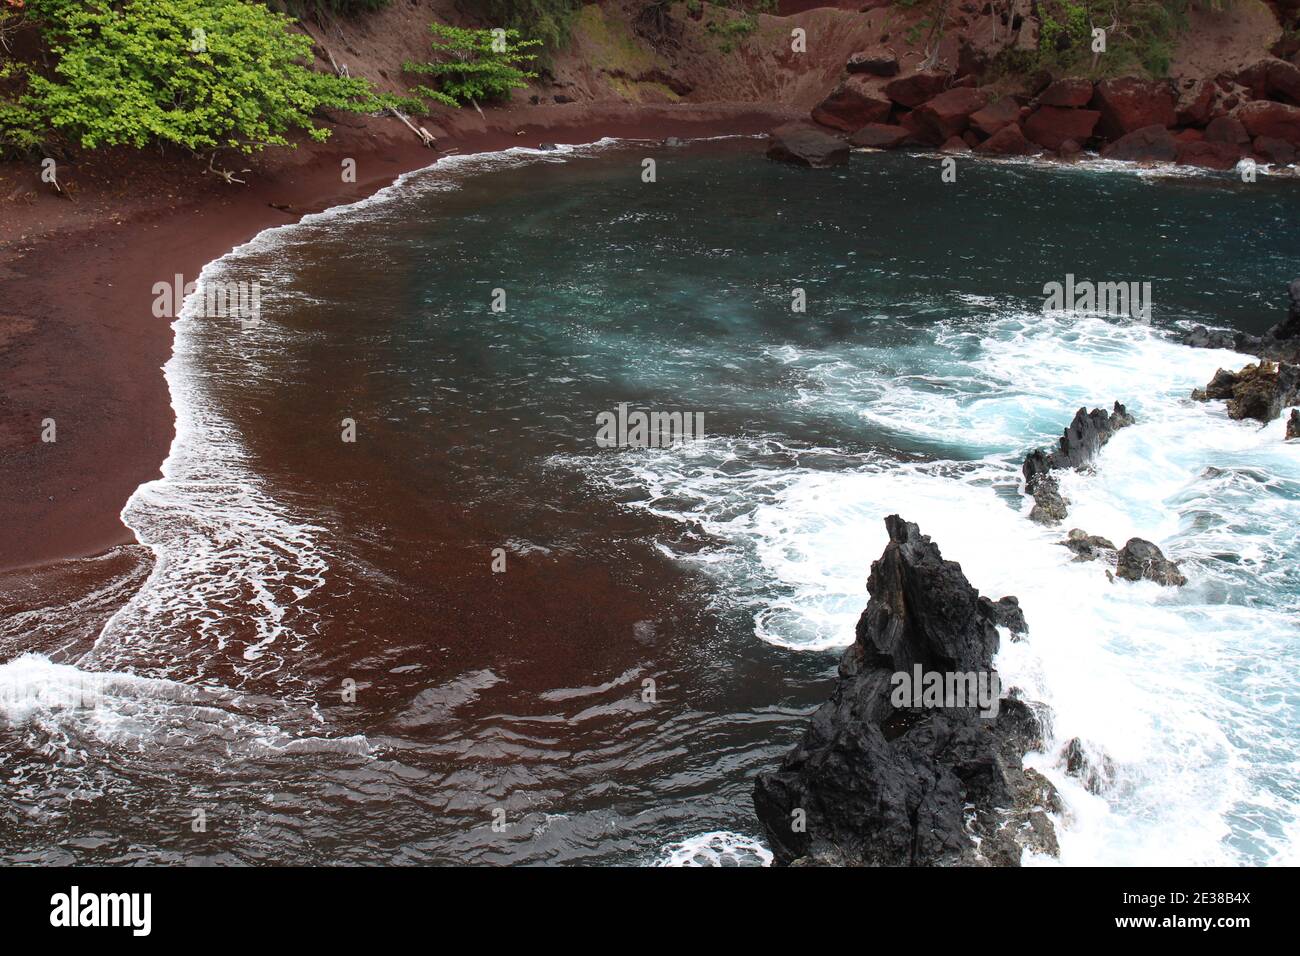 Le acque turchesi dell'Oceano Pacifico incontrano la sabbia rossa della Baia di Kaihalulu a Hana, Maui, Hawaii, USA Foto Stock